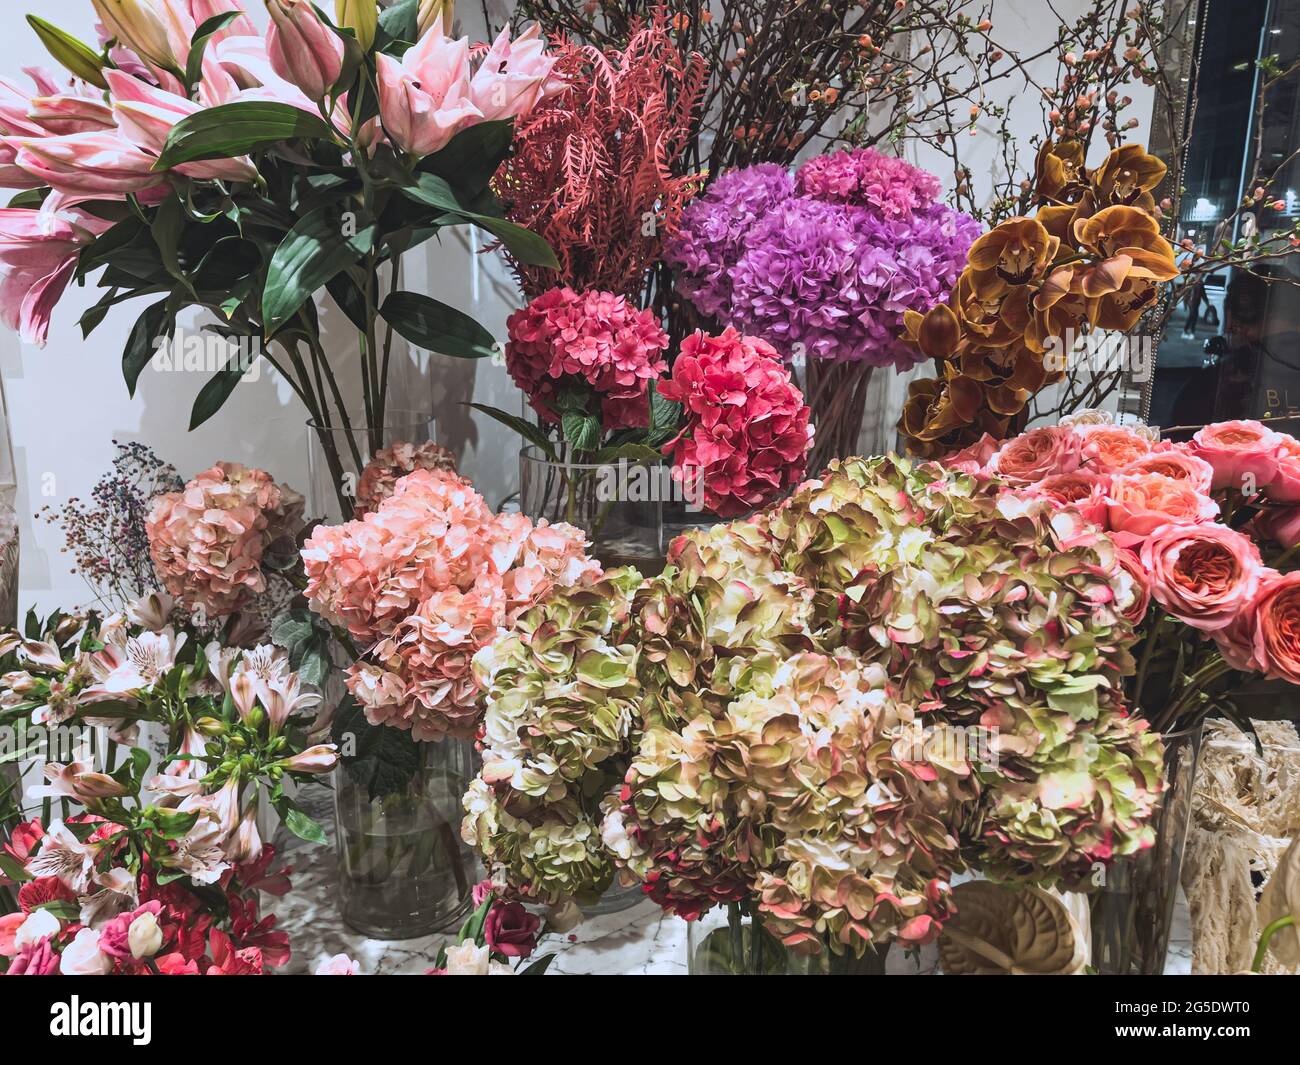 Hermosas flores de regalo en una tienda - coloridas flores naturales y rosas - regalo del día de la madre Foto de stock